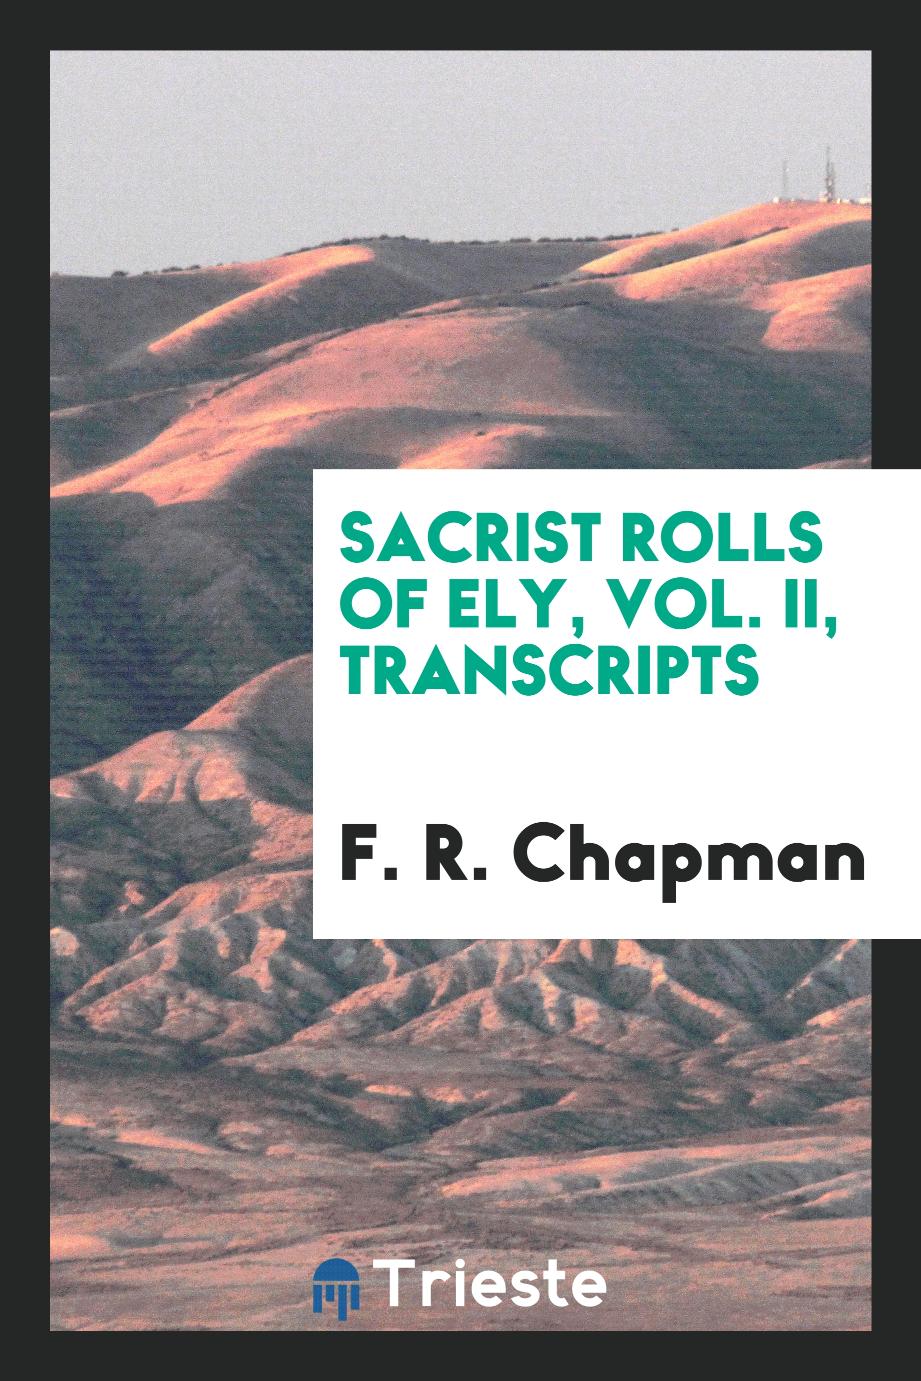 Sacrist rolls of Ely, Vol. II, transcripts